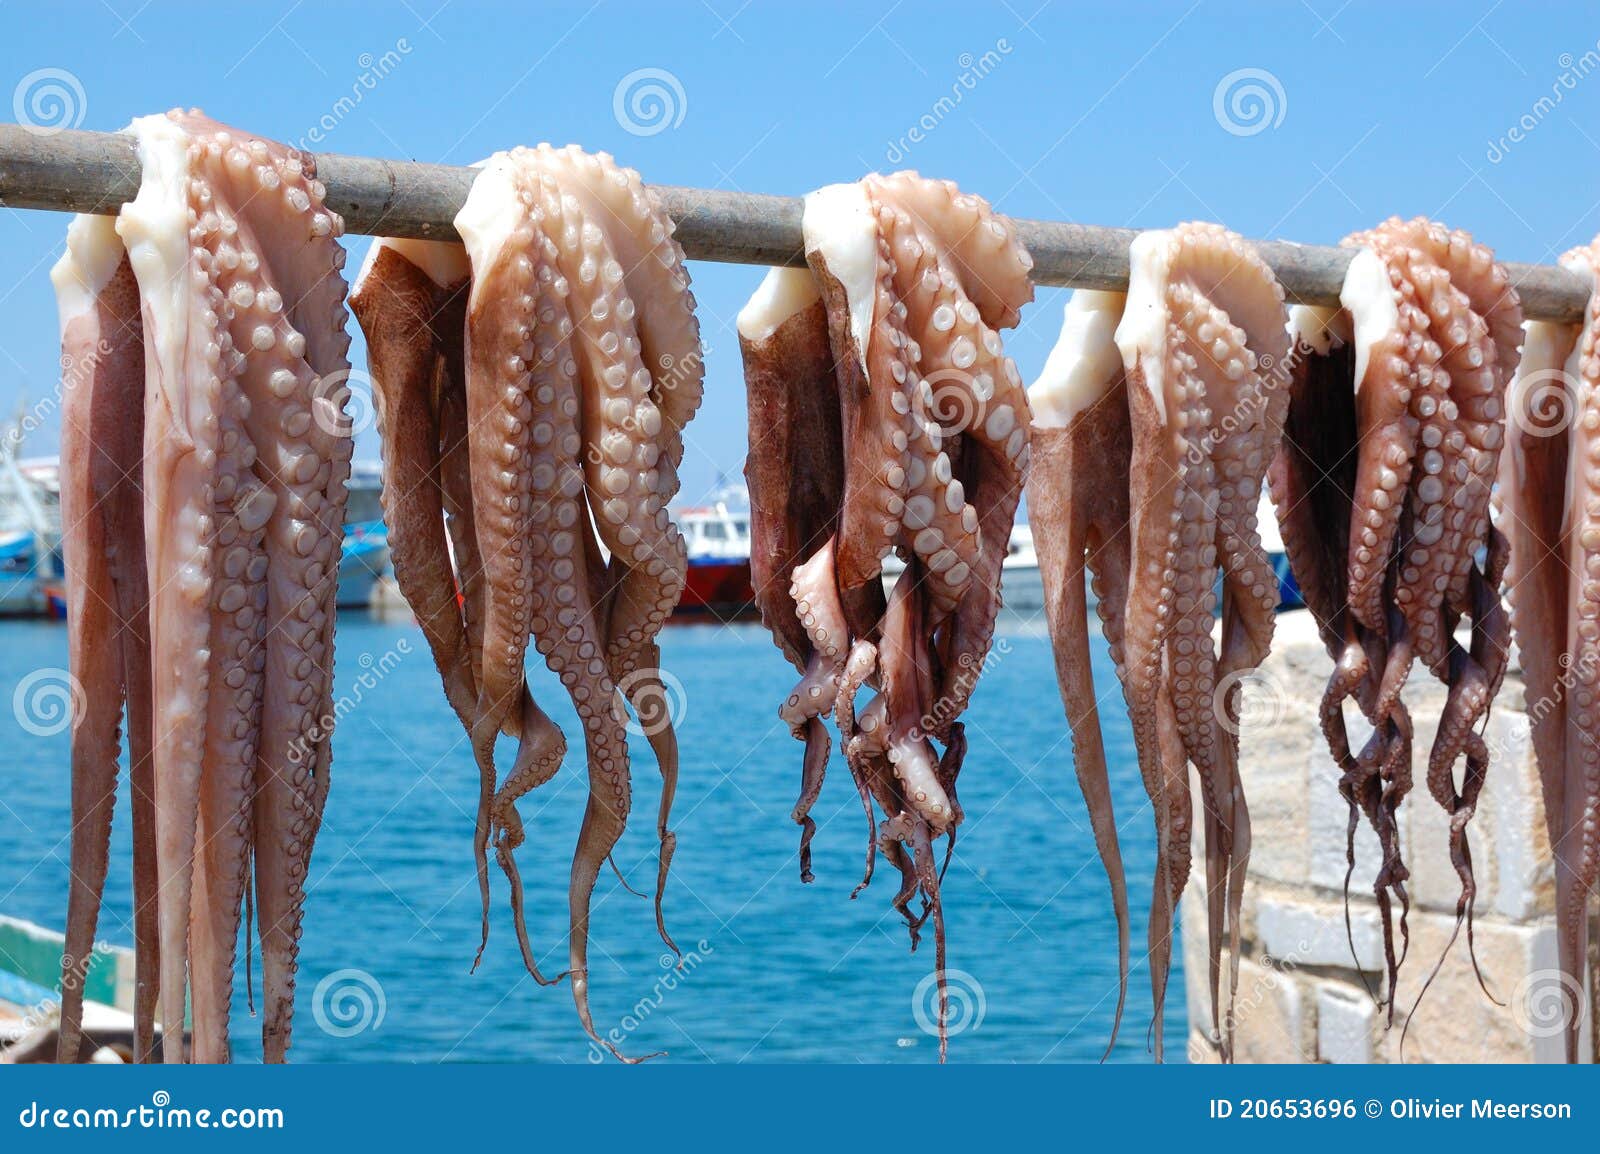 octopus drying in greek islands